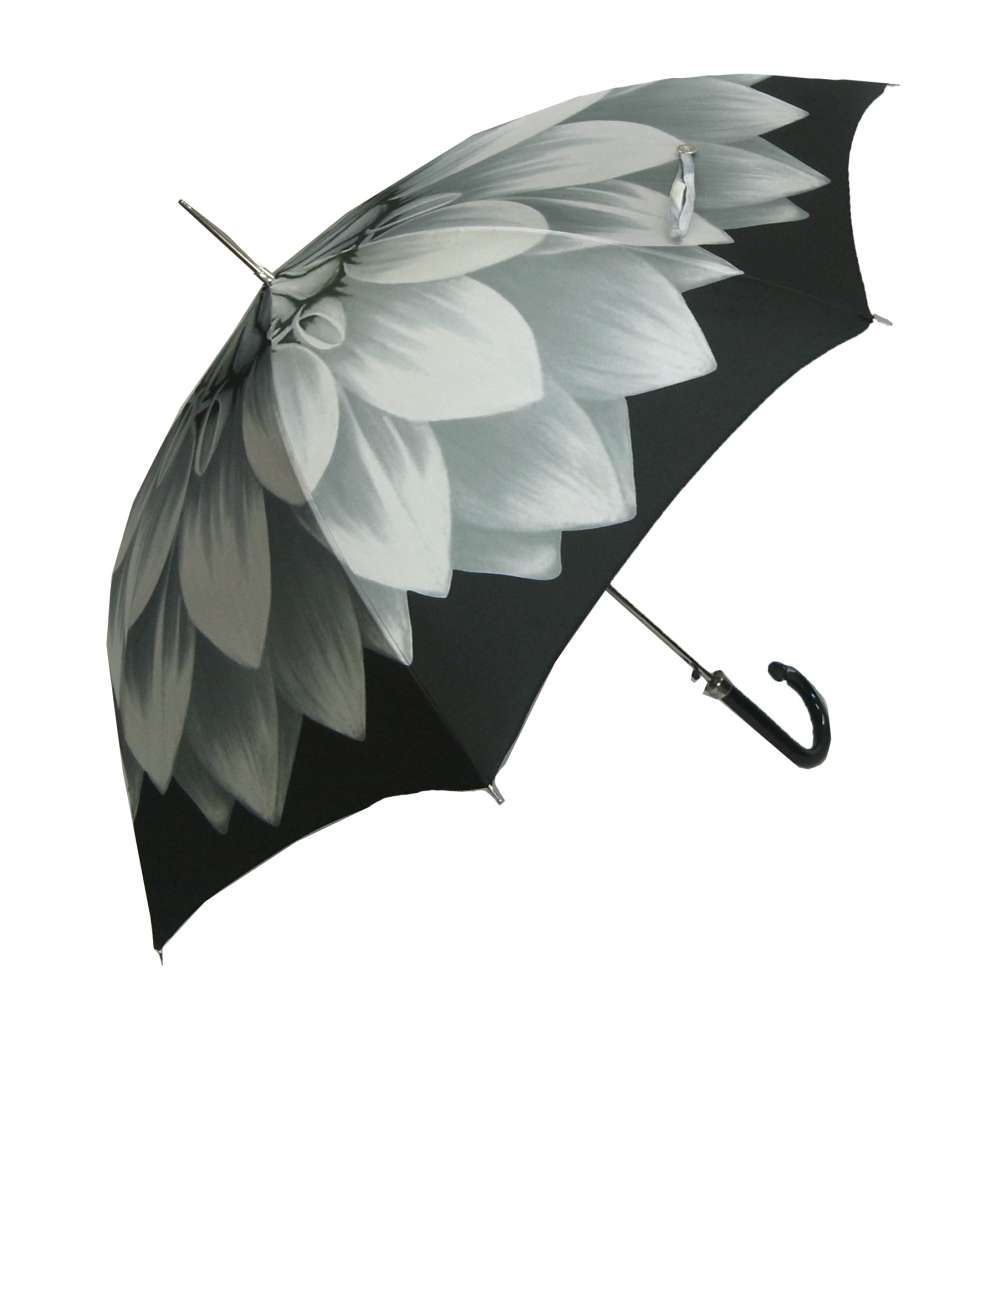 在庫切れ（完売）となりました。次回入荷は未定でございます。ご購入いただき誠にありがとうございました。#パソッティ #傘 #レディース